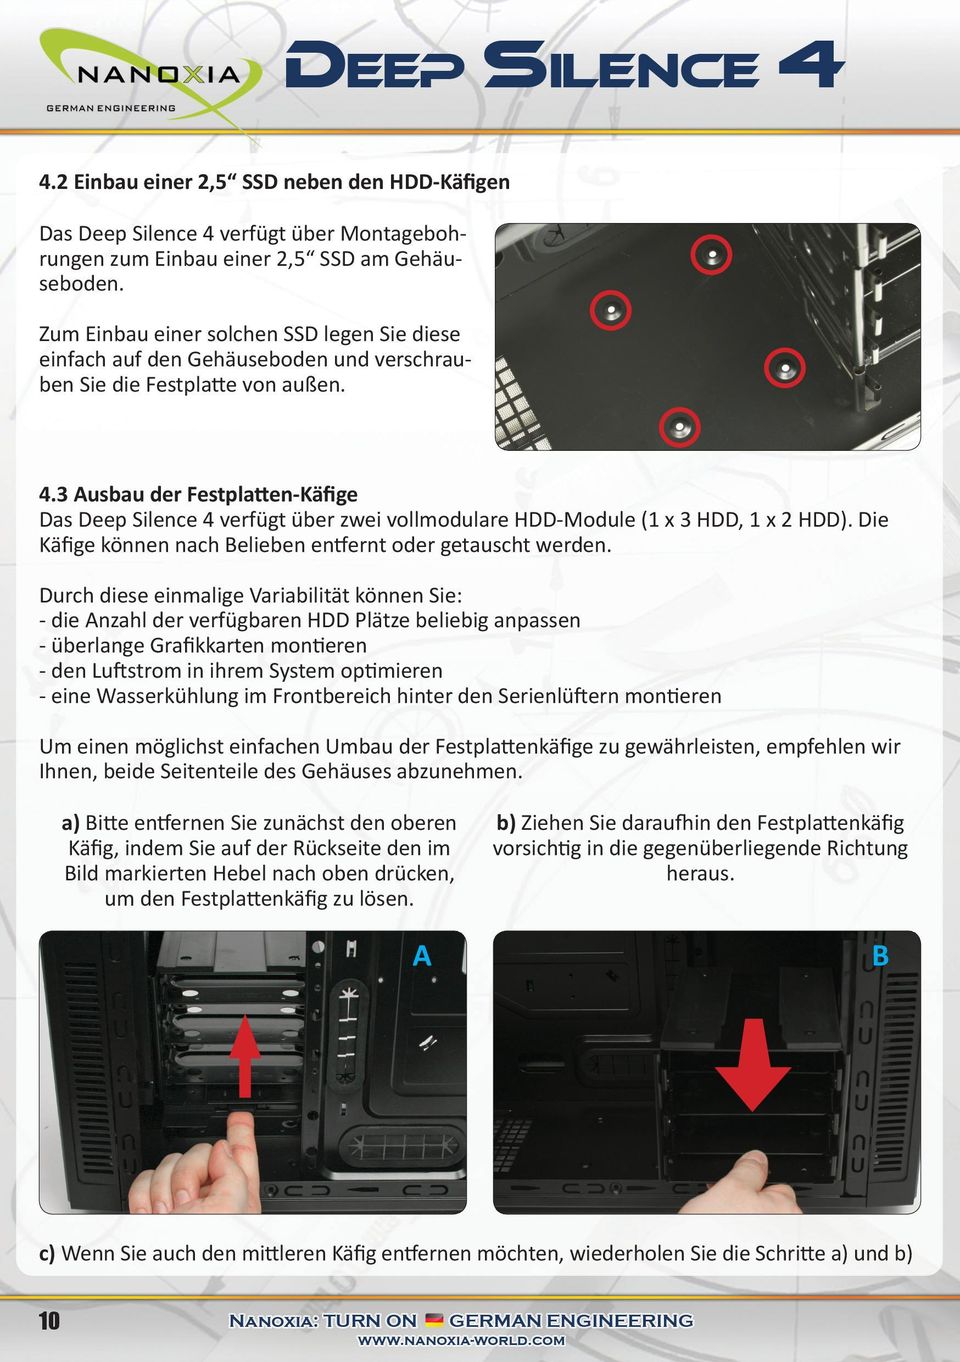 3 Ausbau der Festplatten-Käfige Das Deep Silence 4 verfügt über zwei vollmodulare HDD-Module (1 x 3 HDD, 1 x 2 HDD). Die Käfige können nach Belieben entfernt oder getauscht werden.